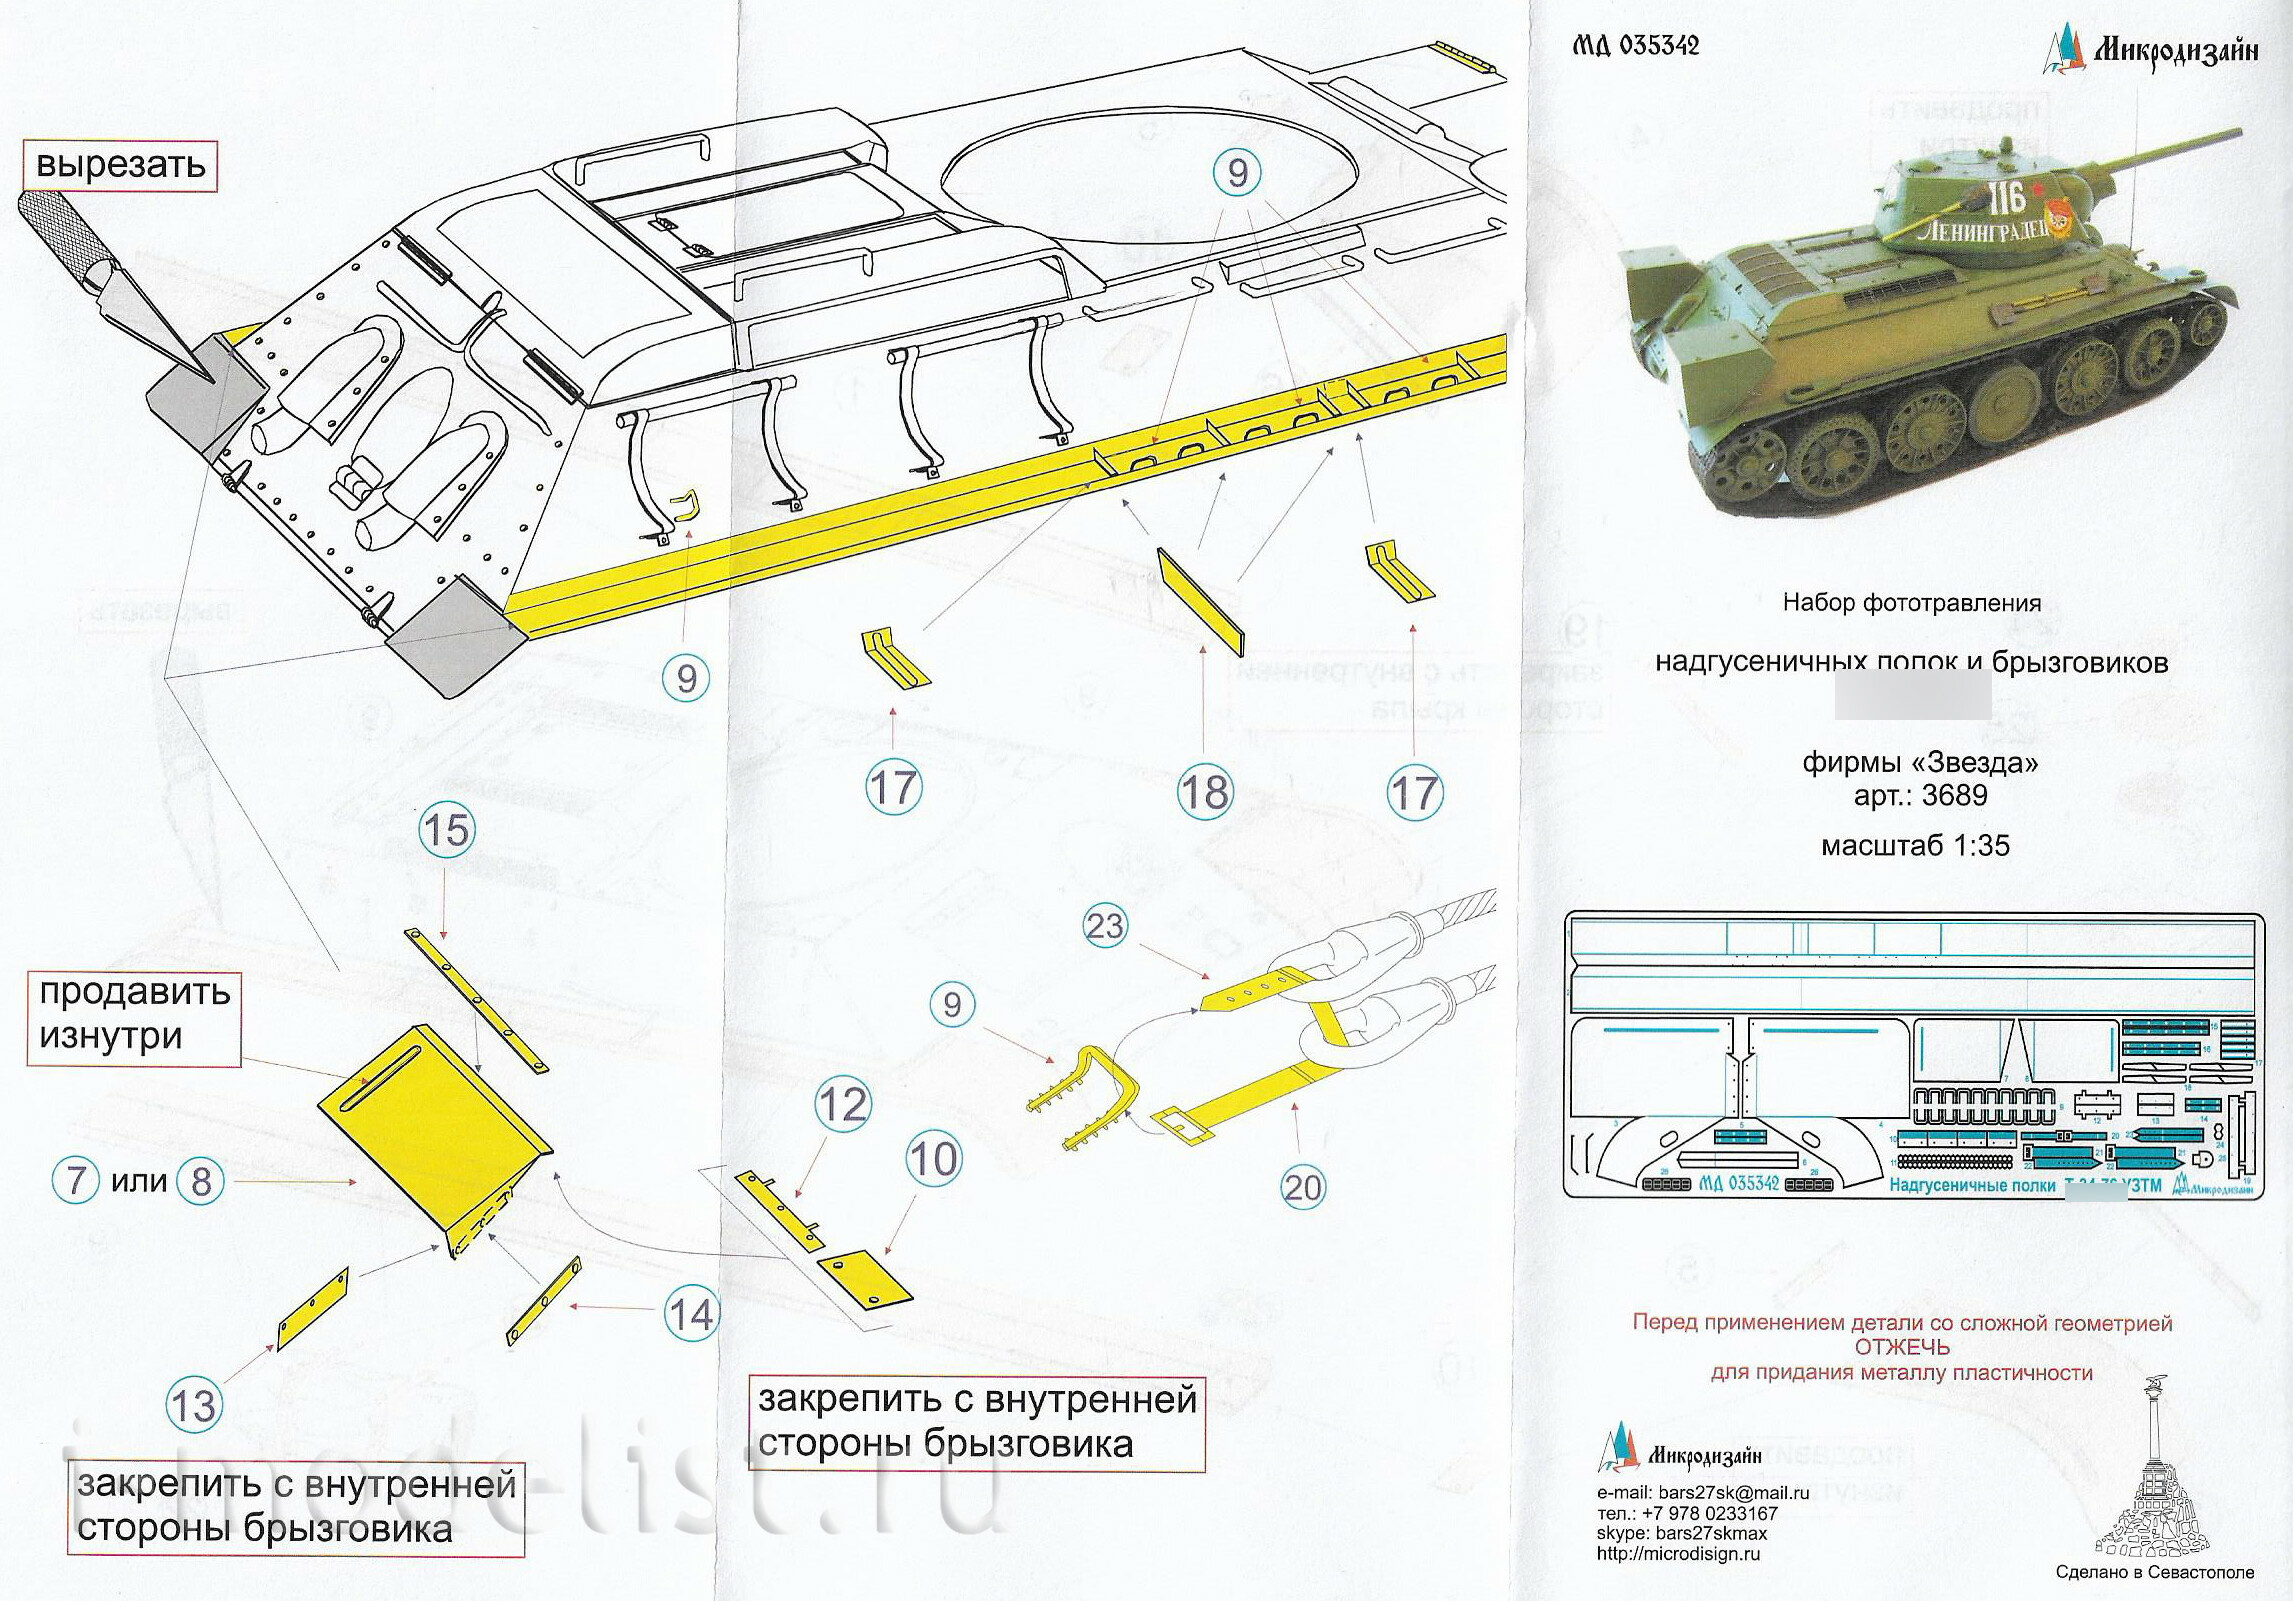 035342 Микродизайн 1/35 Танк 34-76 надгусеничные полки (Zvezda)